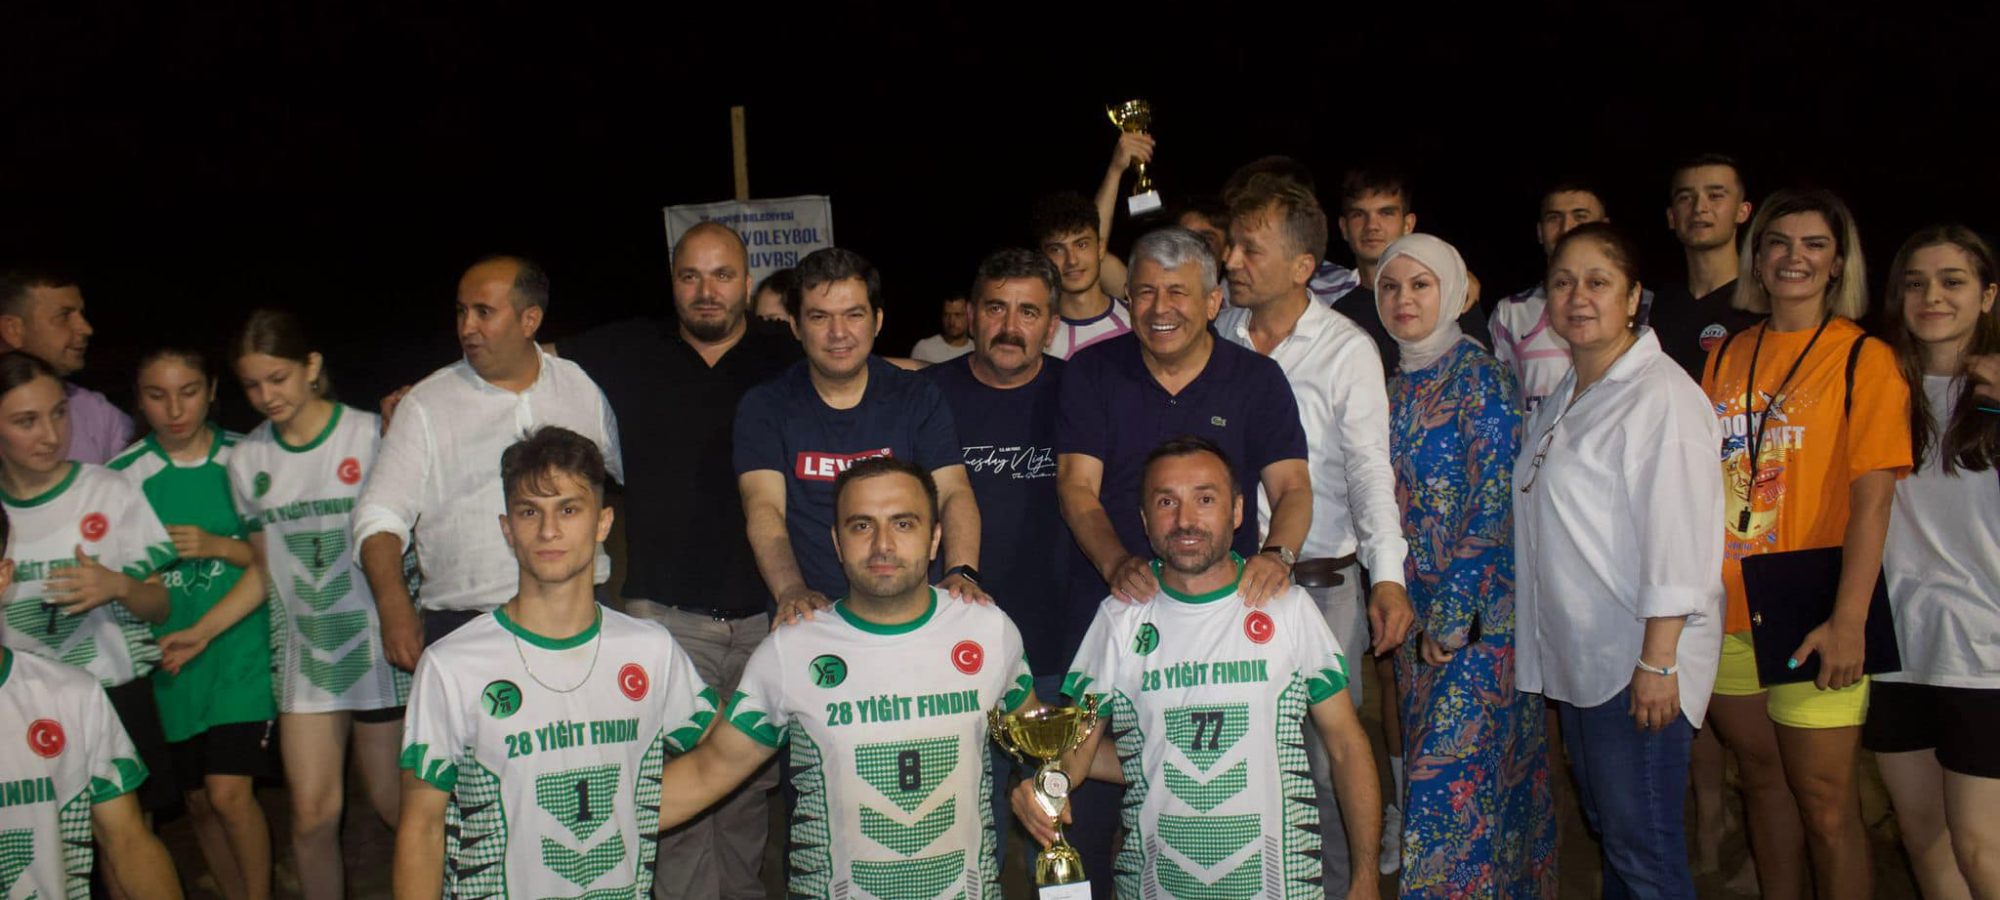 Espiye Belediyesi 1. Plaj Voleybol Turnuvasının kazananı Çepni Boyu Kahvecioğlu Grup oldu.